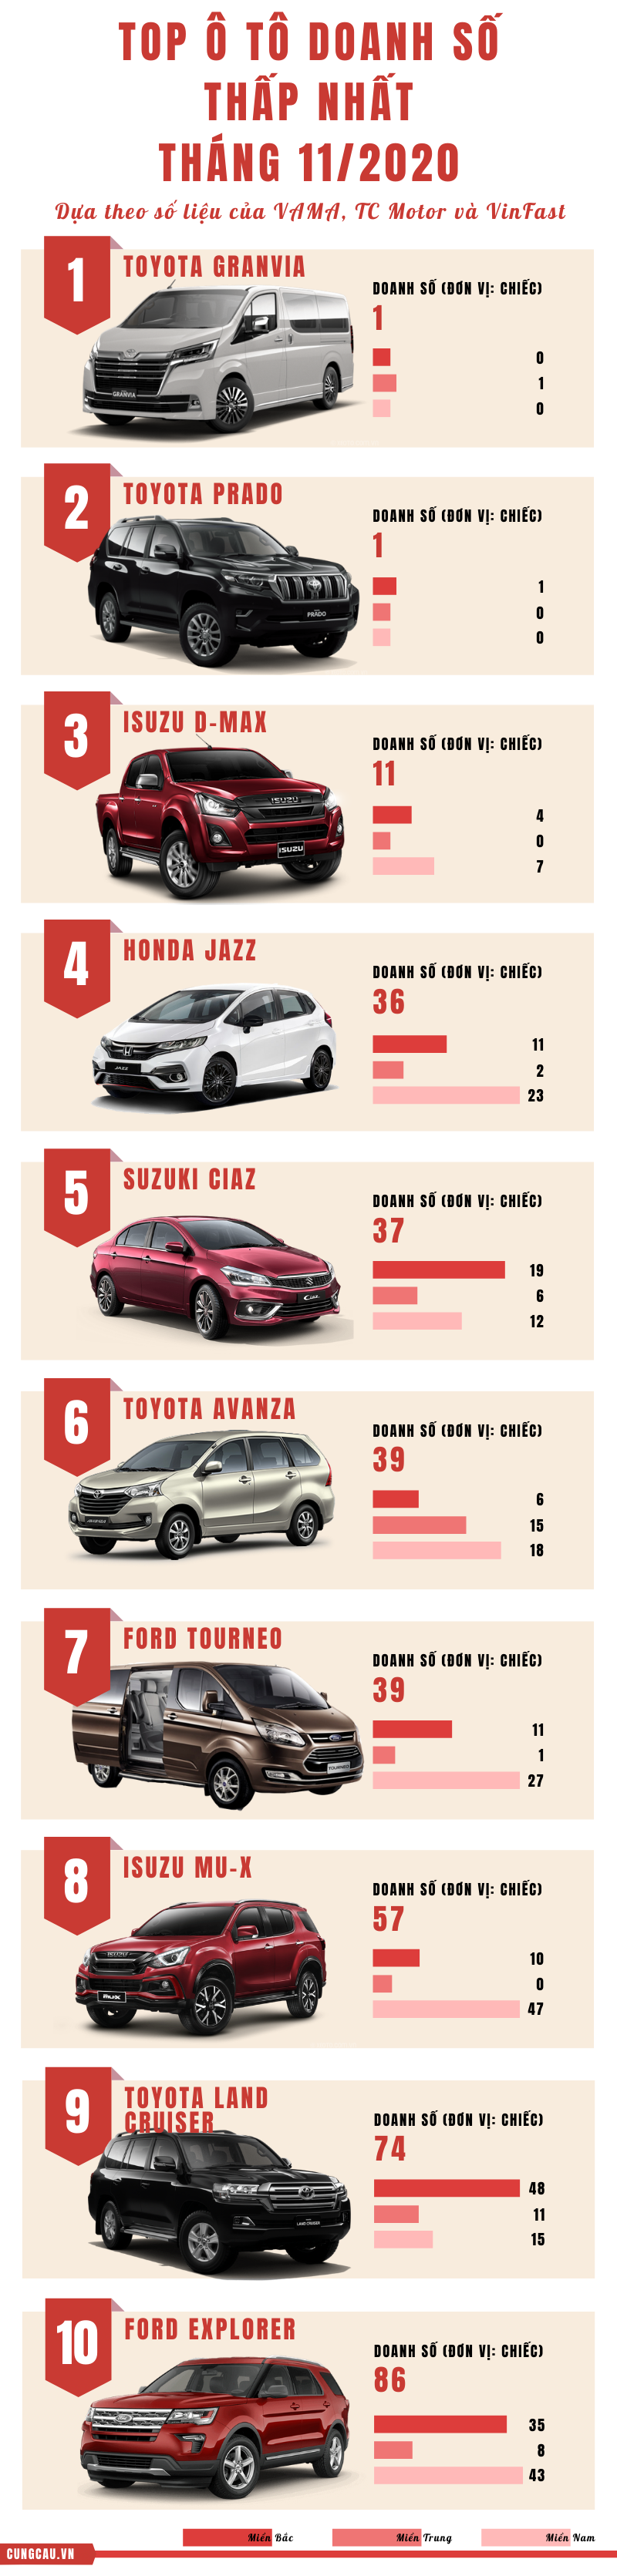 Top 10 ô tô bán 'ế' nhất tháng 11/2020: SUV chiếm đa số